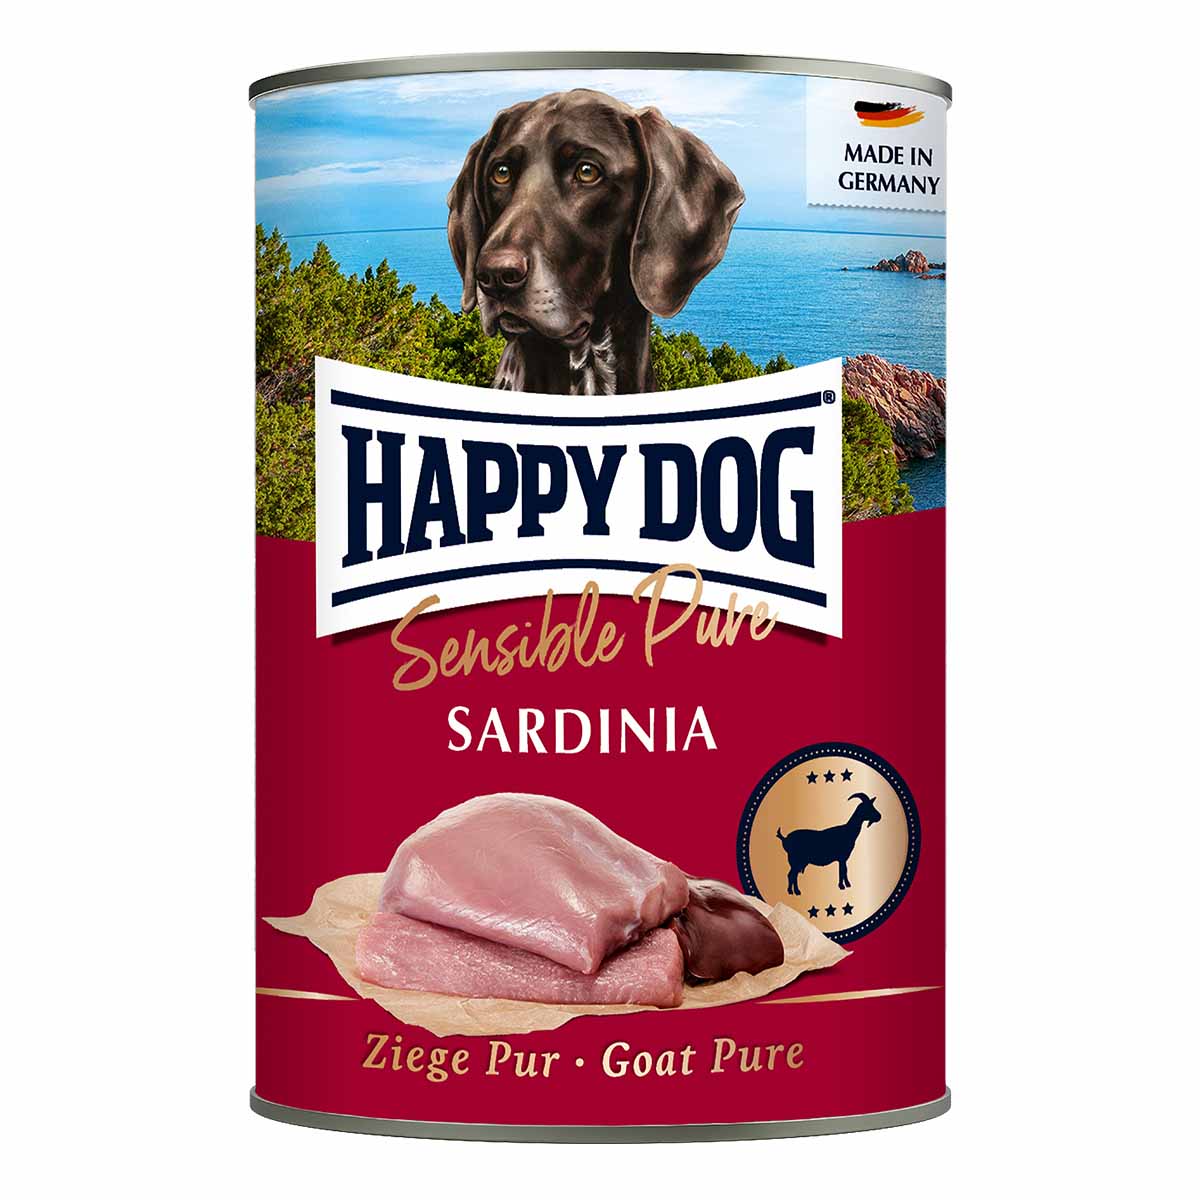 Happy Dog Sensible Pure Sardinia (Ziege) 12x400g